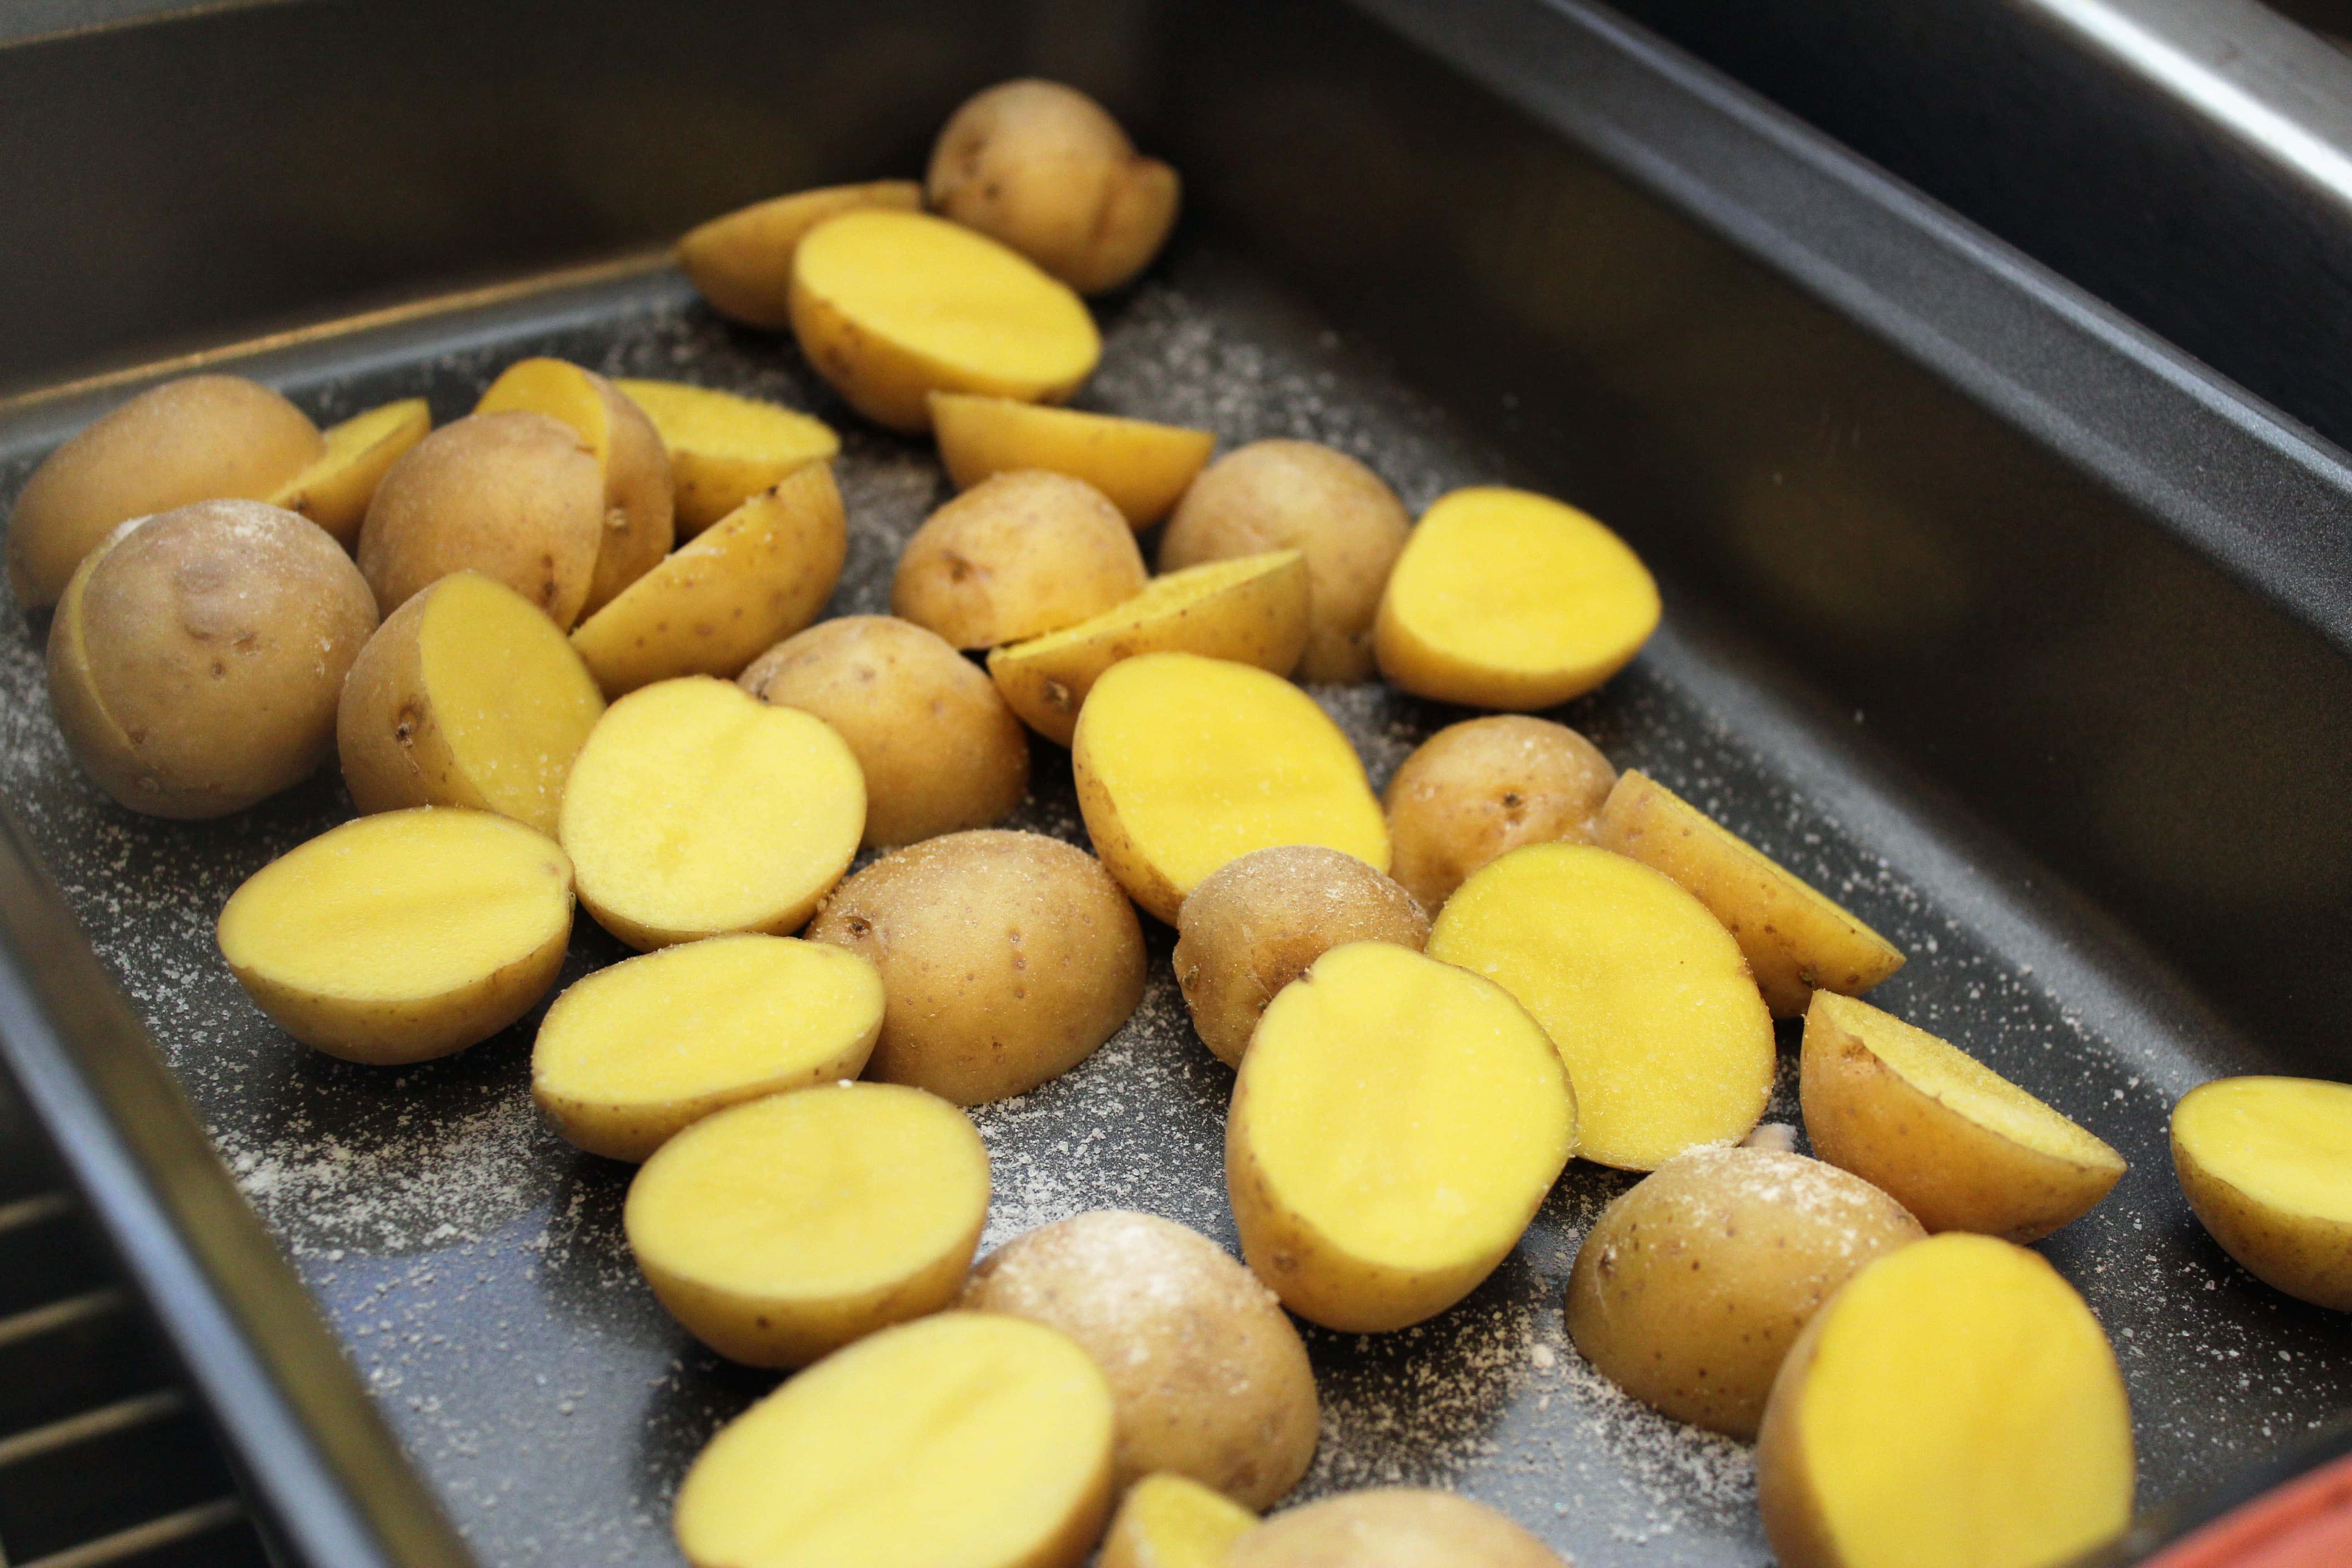 Arrange potatoes in pan with salt